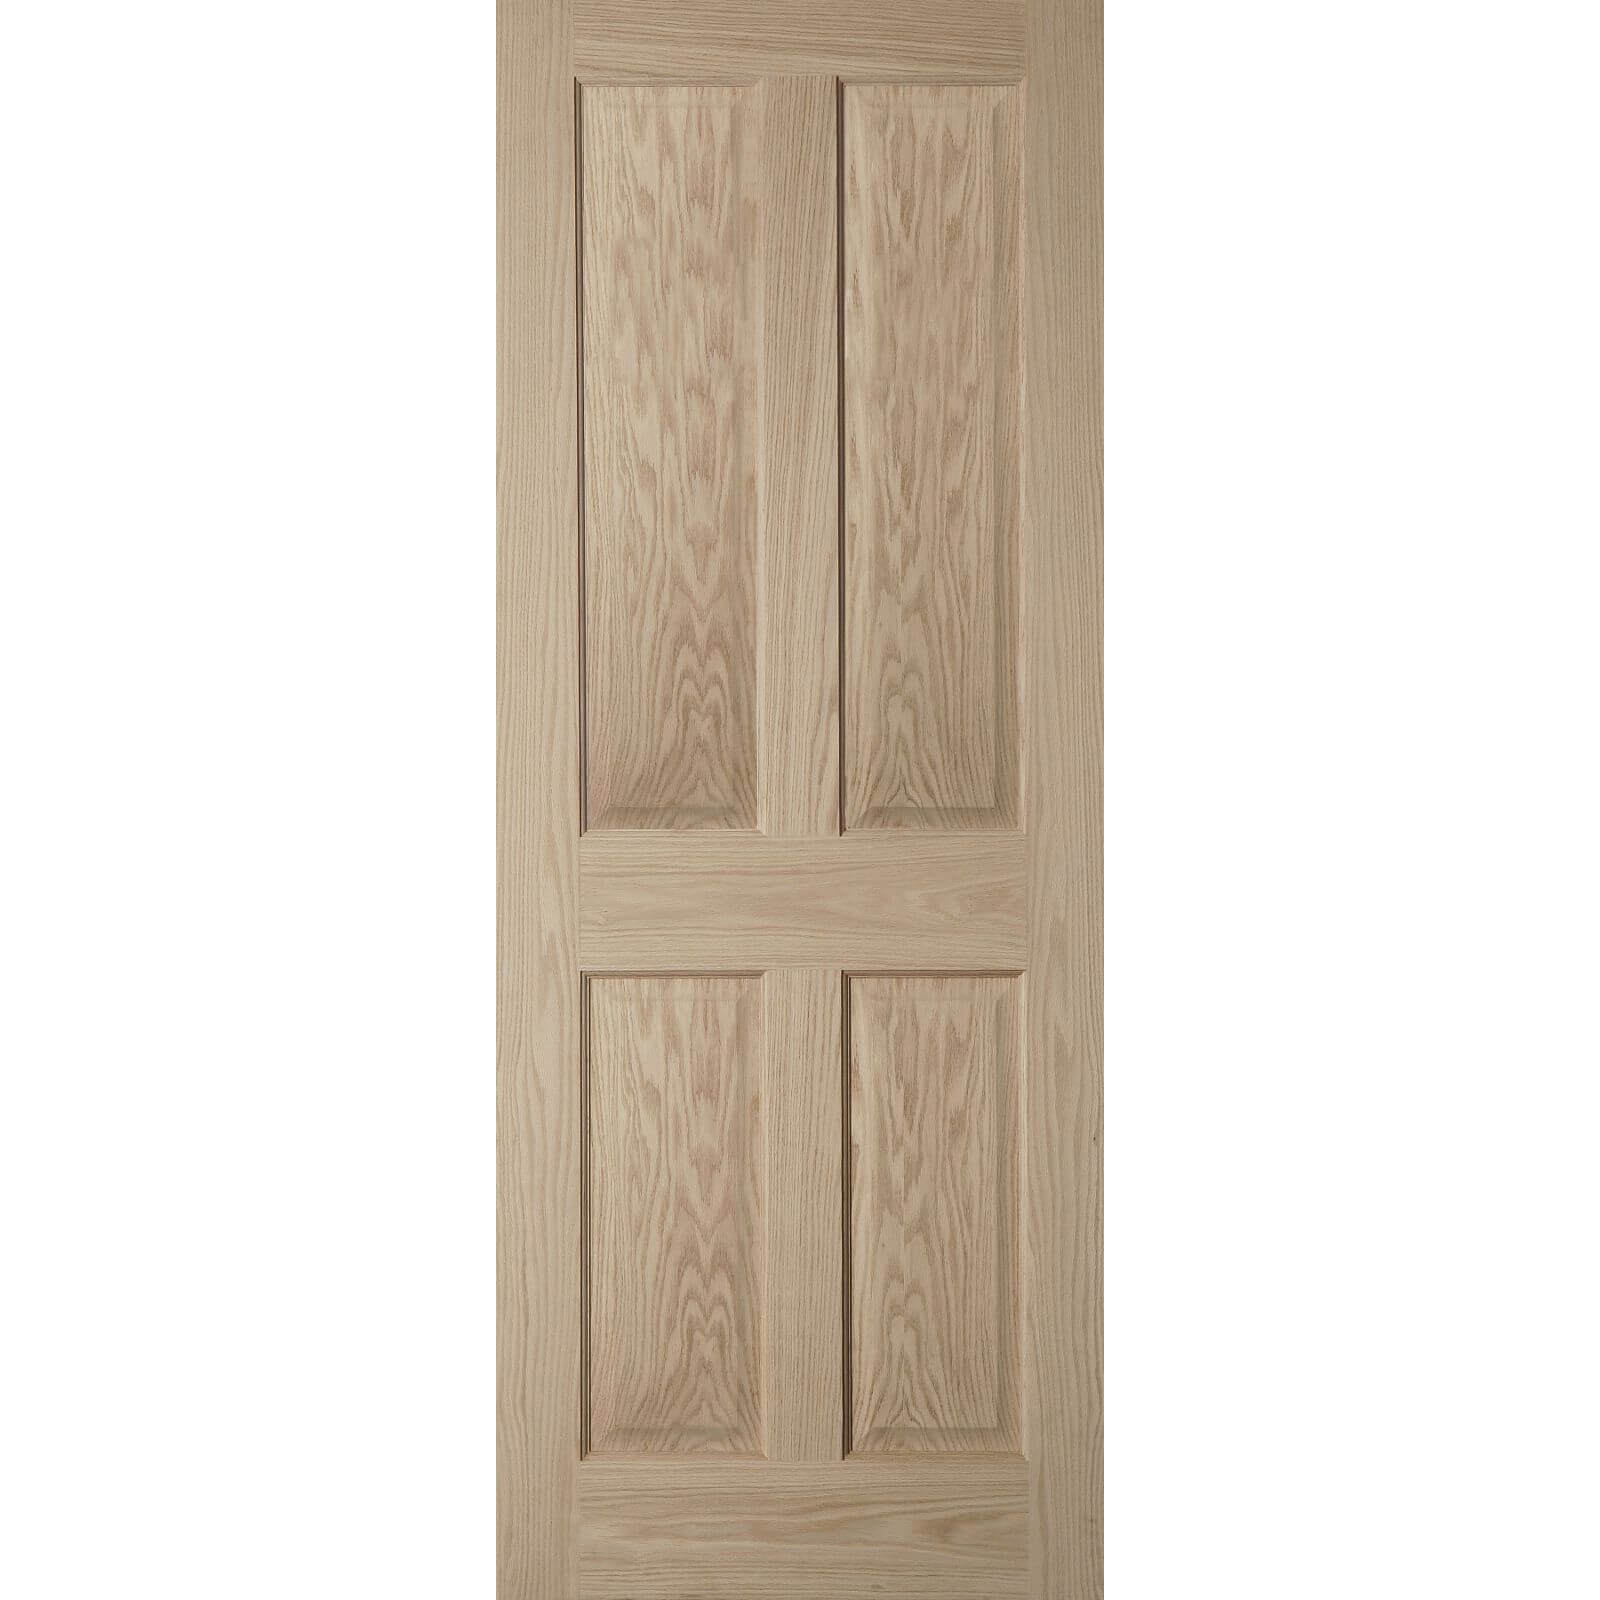 4 Panel Oak Veneer Internal Door - 826mm Wide